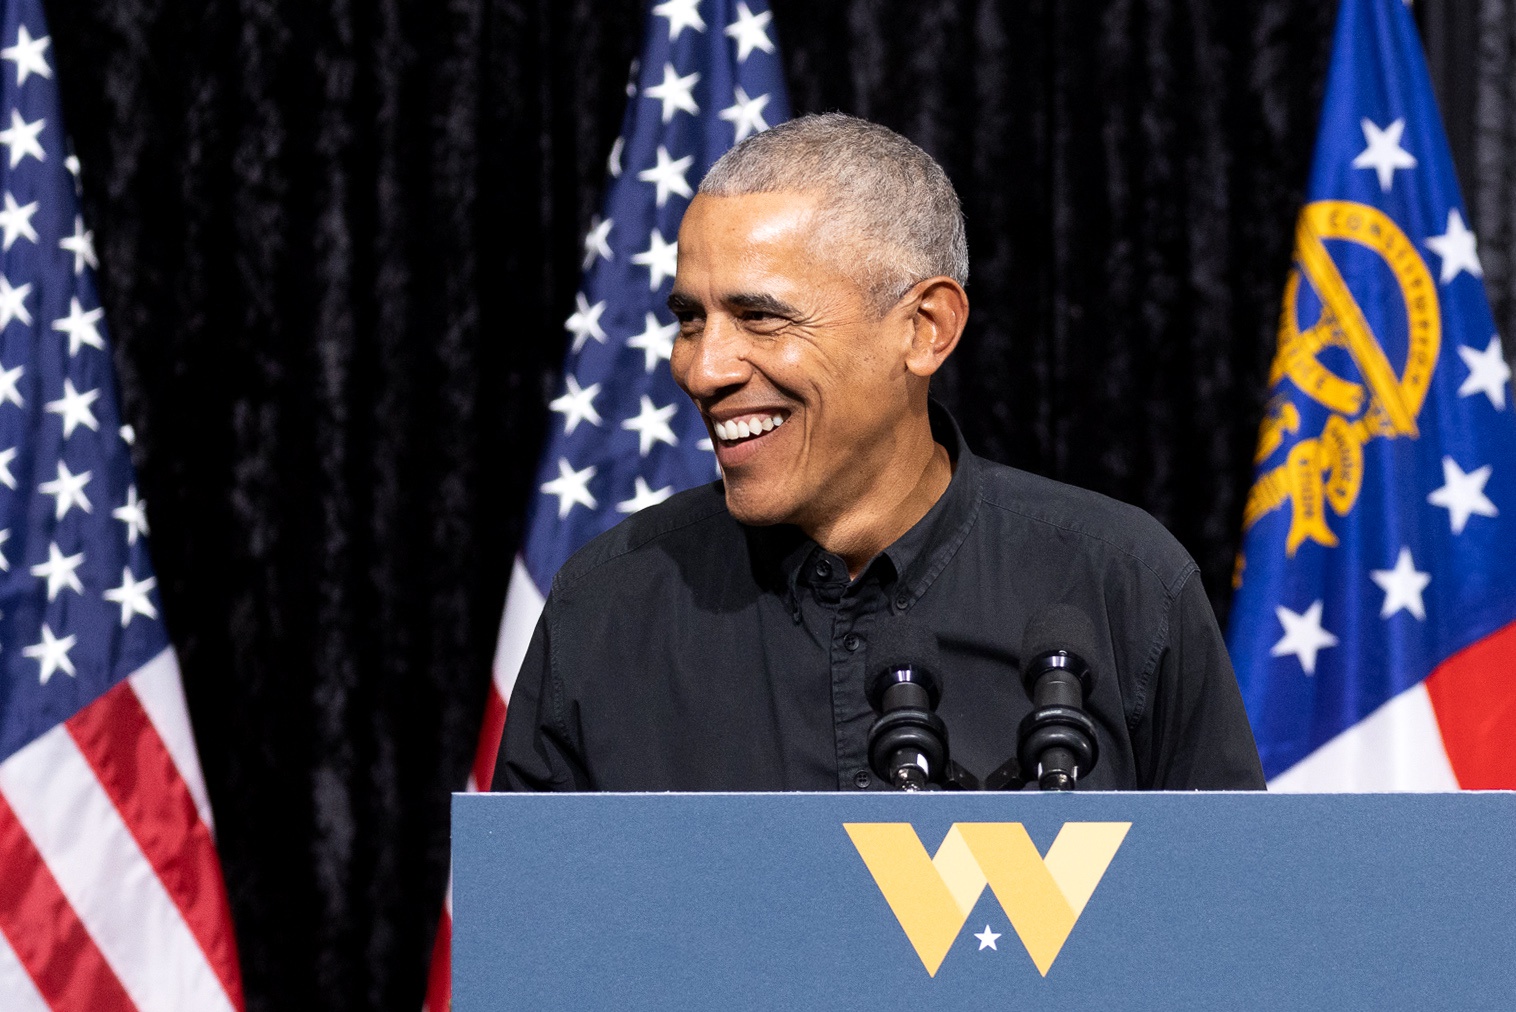 ABD’nin eski başkanı Obama, seçimde Kamala Harris’e desteğini açıkladı